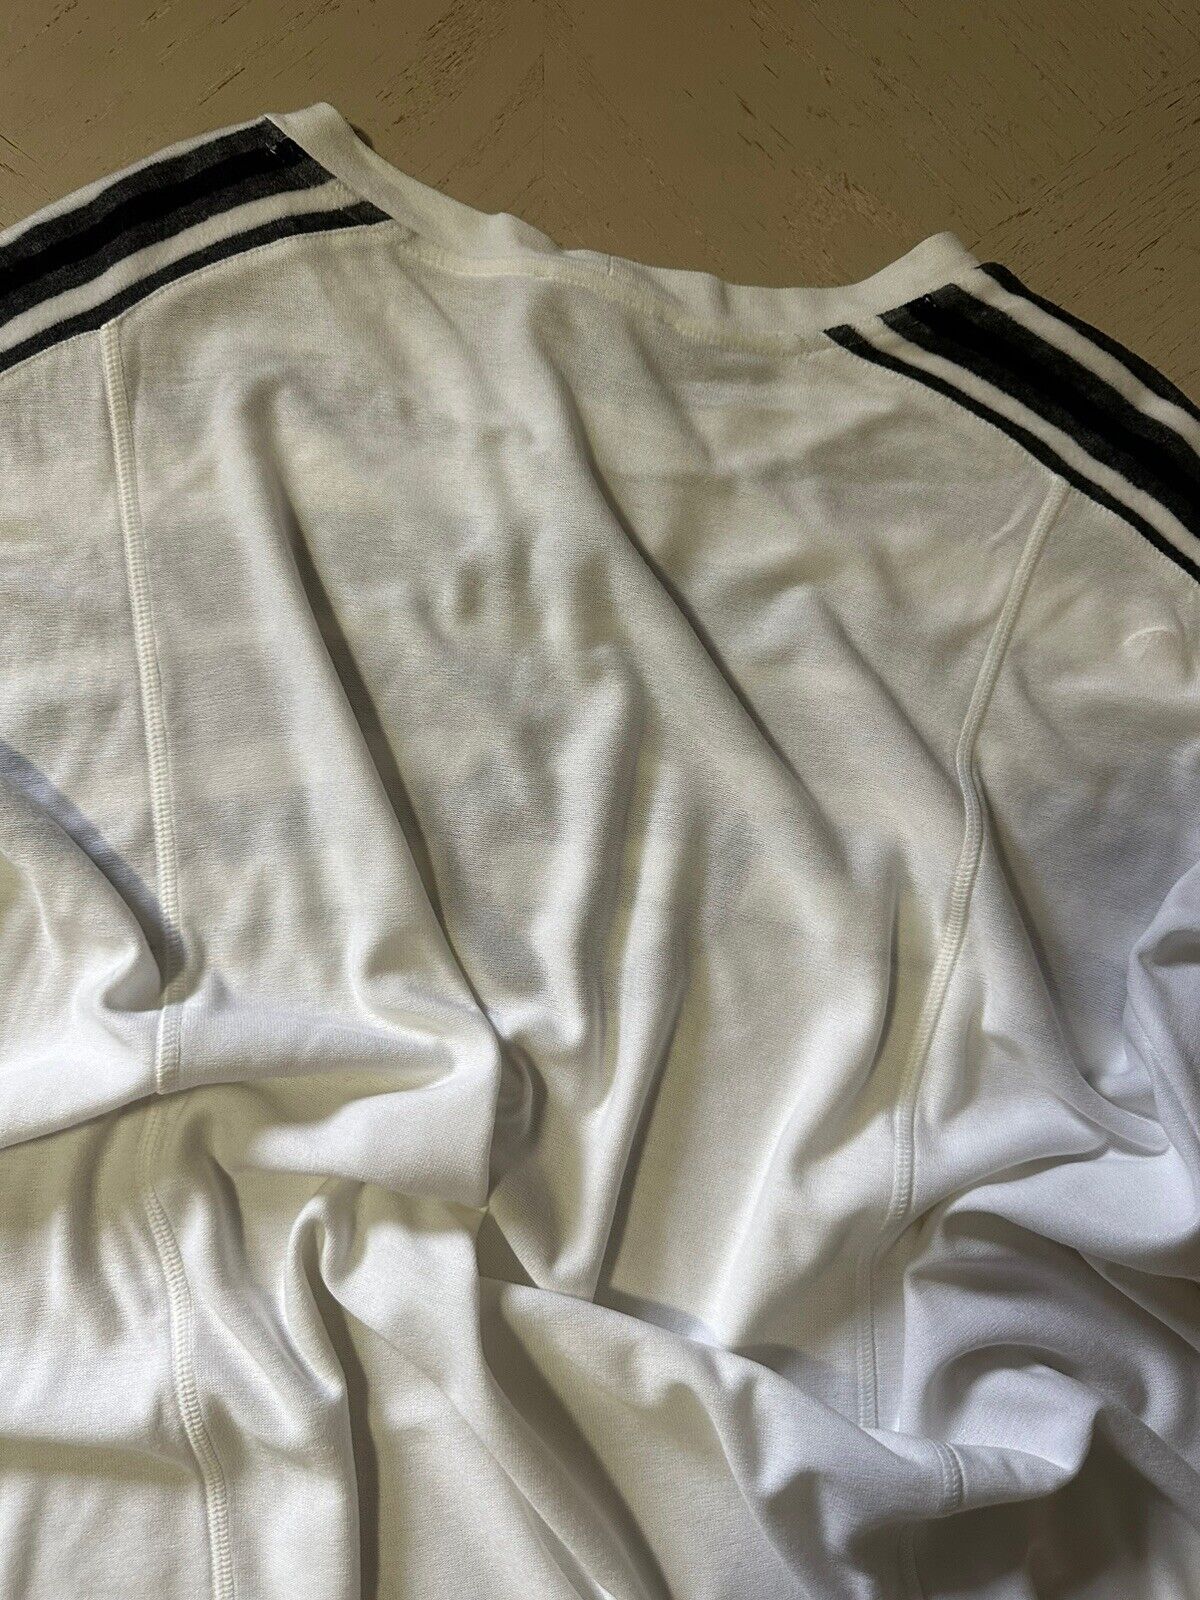 NWT $675 Giorgio Armani Men’s G T Shirt White/Black XXXL ( 60 Eu ) Italy